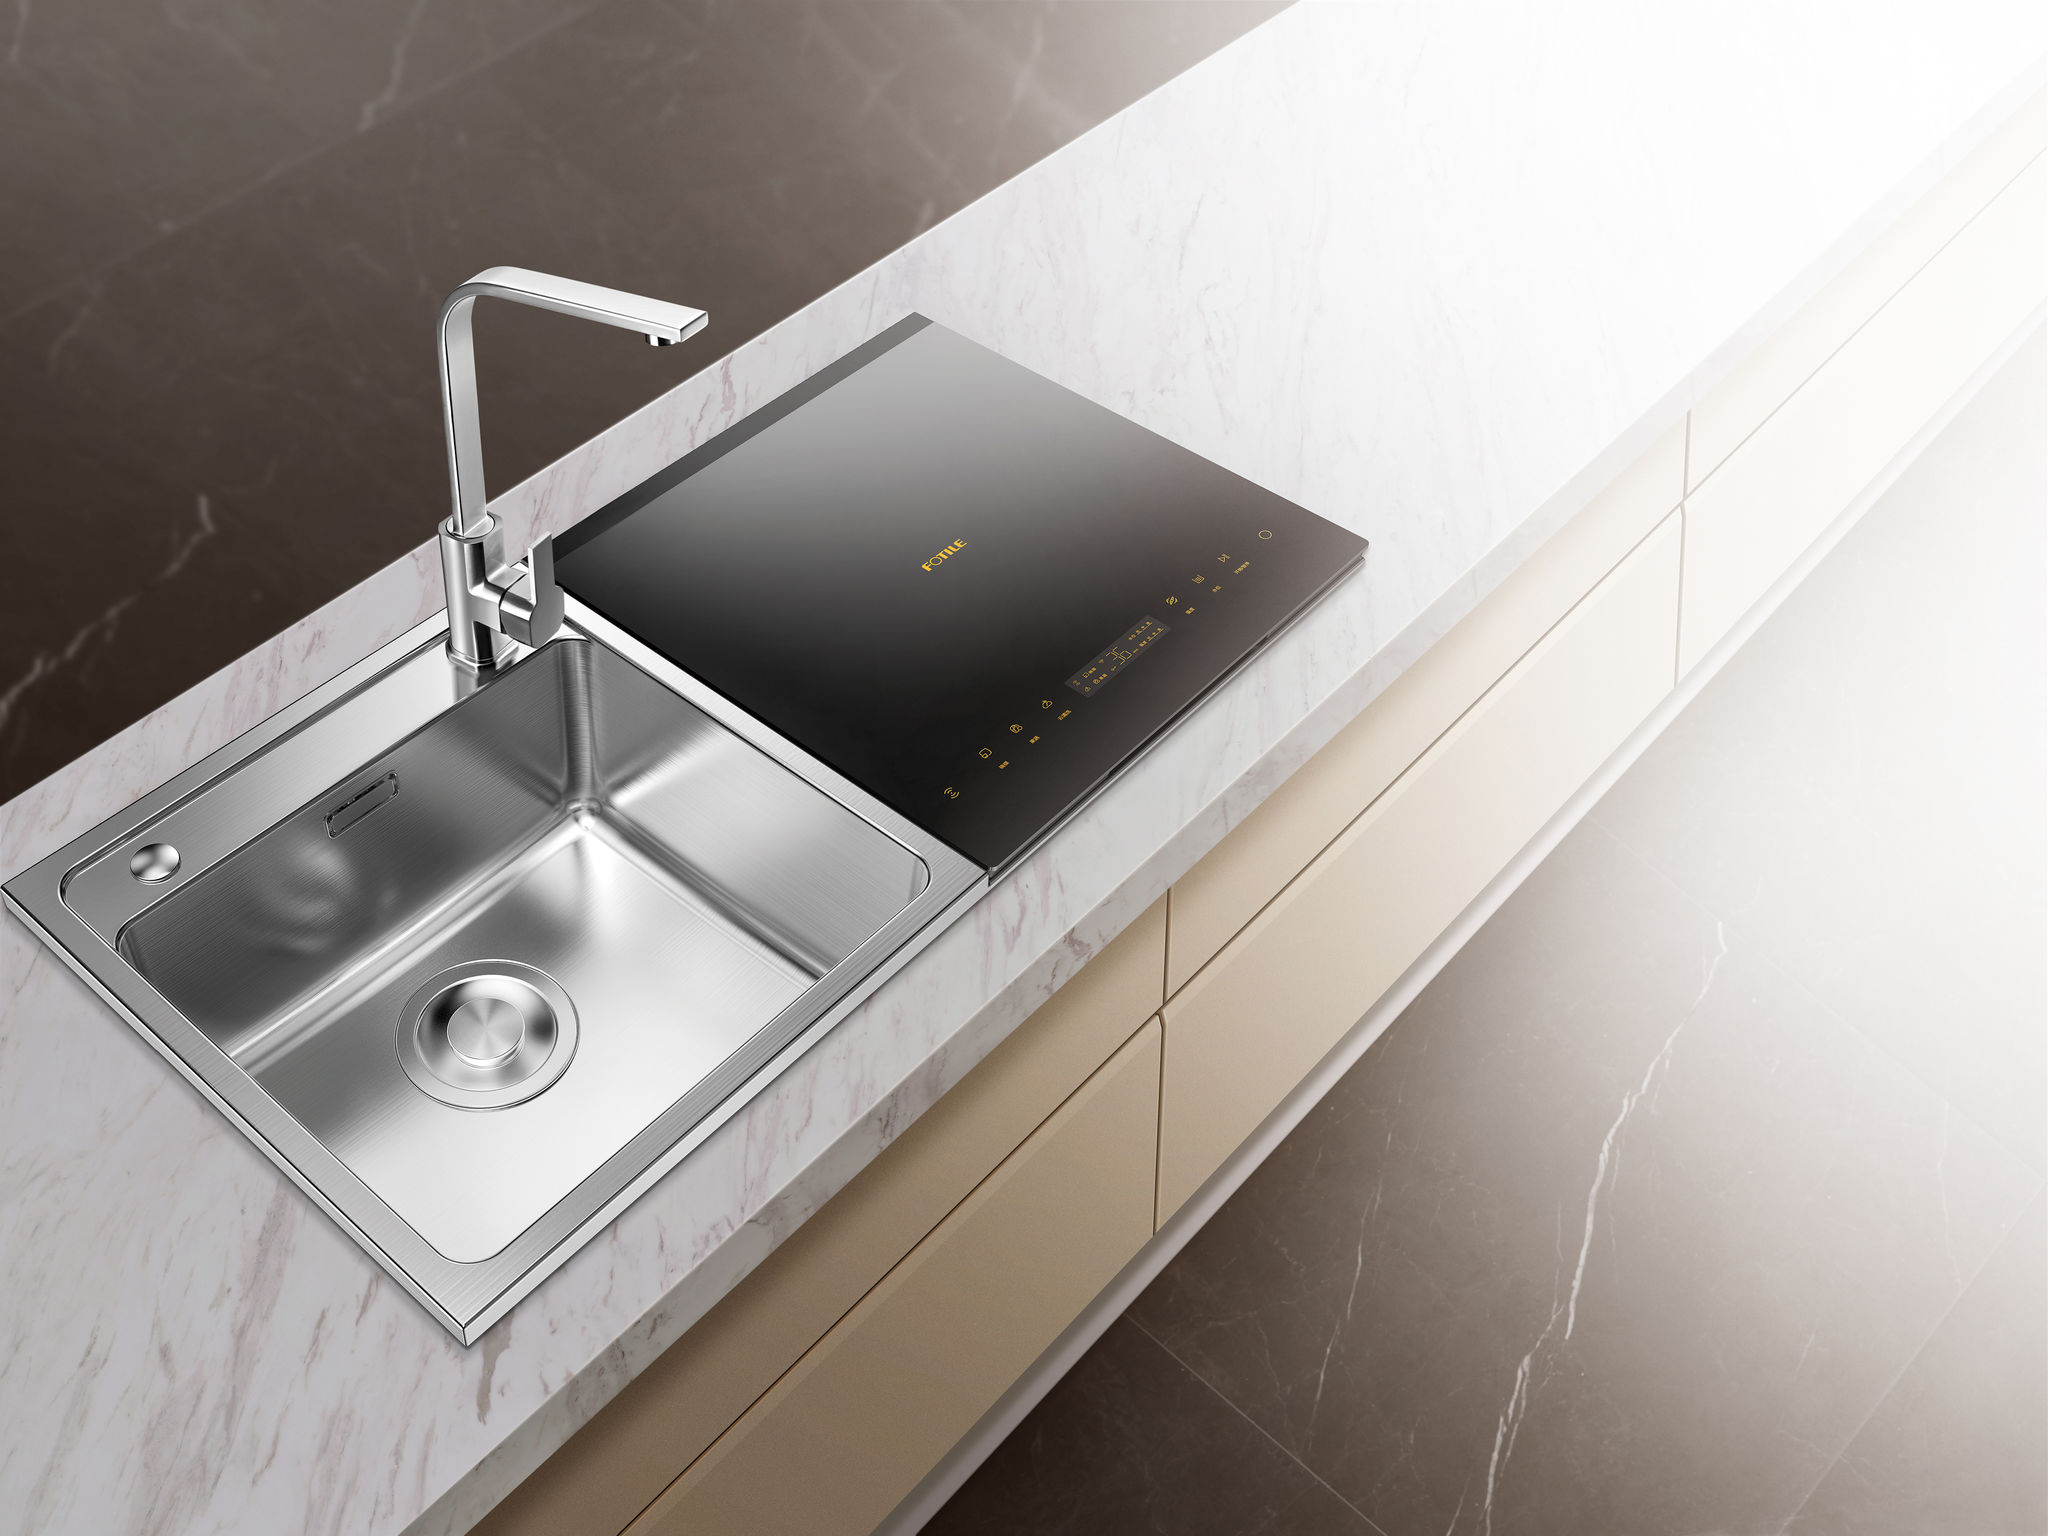  Fotile sink dishwasher  JBSD2T Q8 iF WORLD DESIGN GUIDE